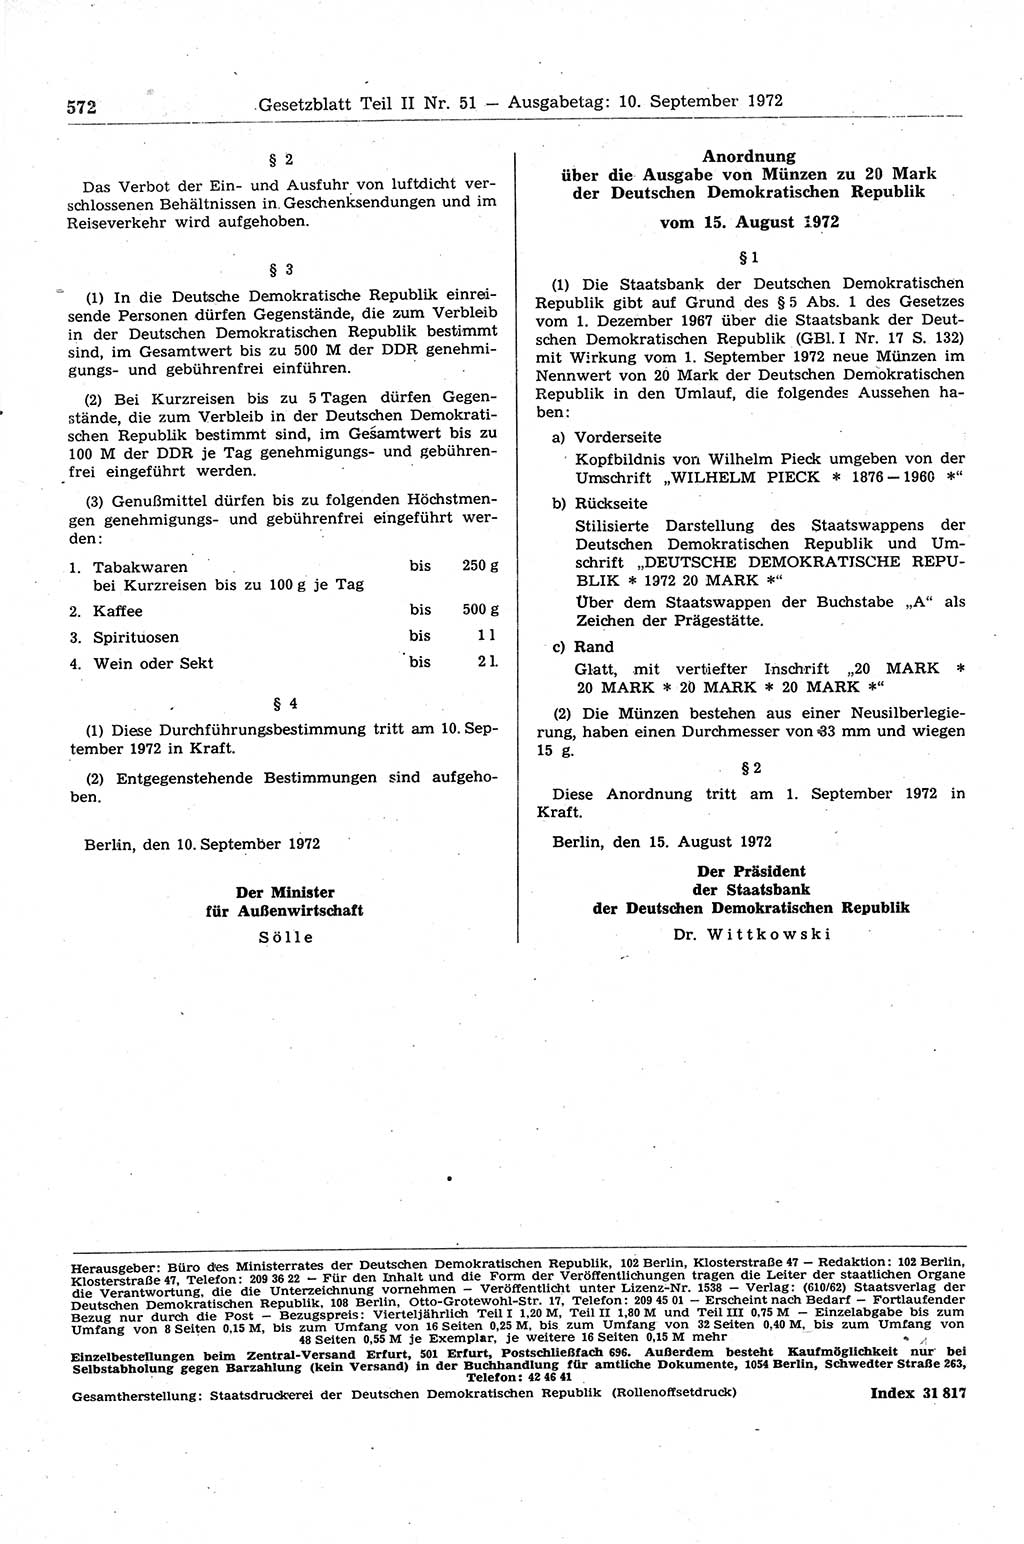 Gesetzblatt (GBl.) der Deutschen Demokratischen Republik (DDR) Teil ⅠⅠ 1972, Seite 572 (GBl. DDR ⅠⅠ 1972, S. 572)